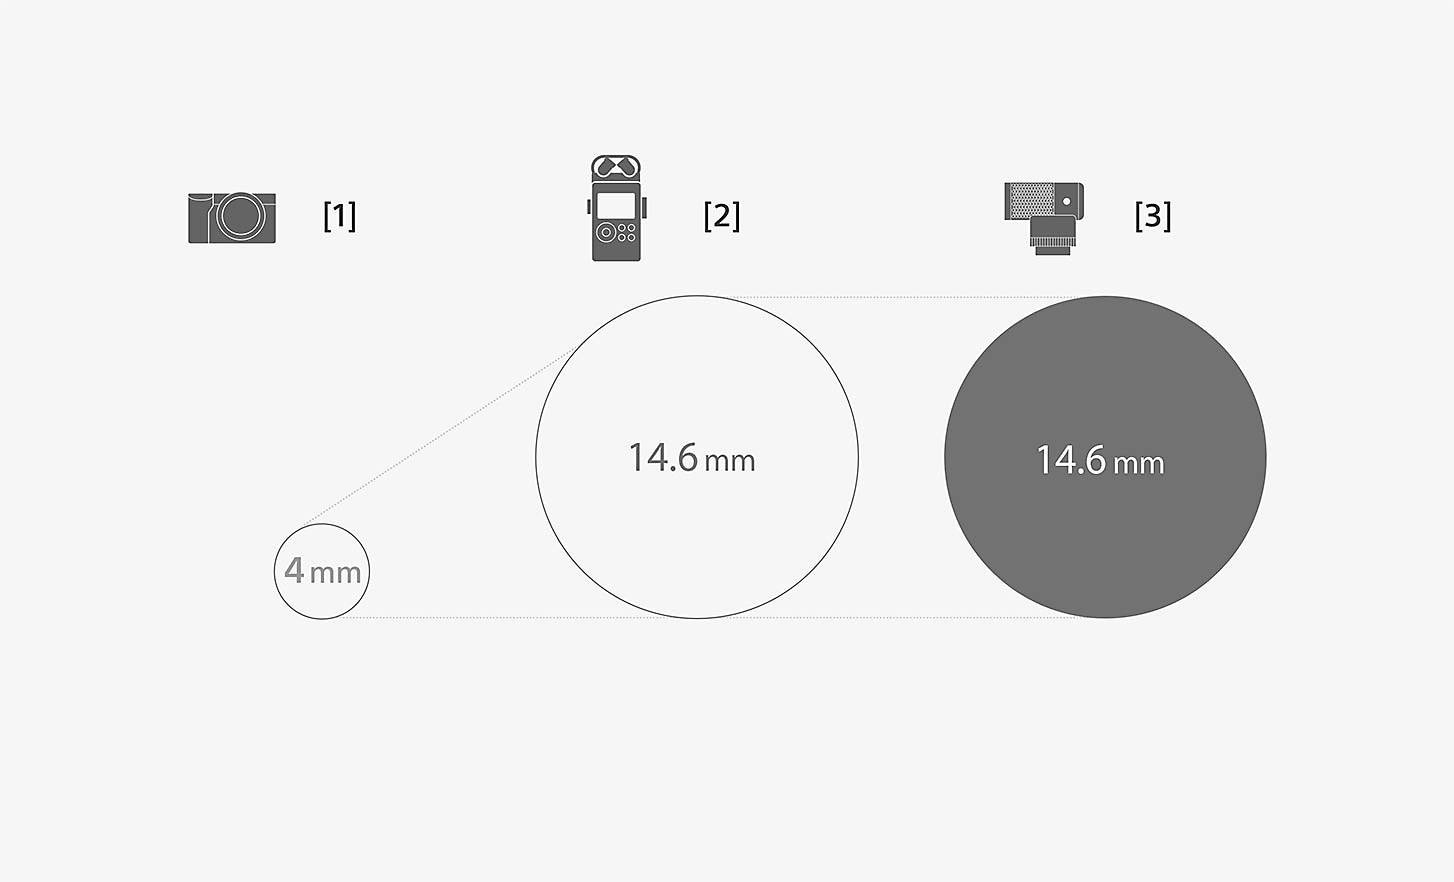 Ilustración que compara las dimensiones de la cápsula del micrófono ECM-G1 y un micrófono integrado estándar